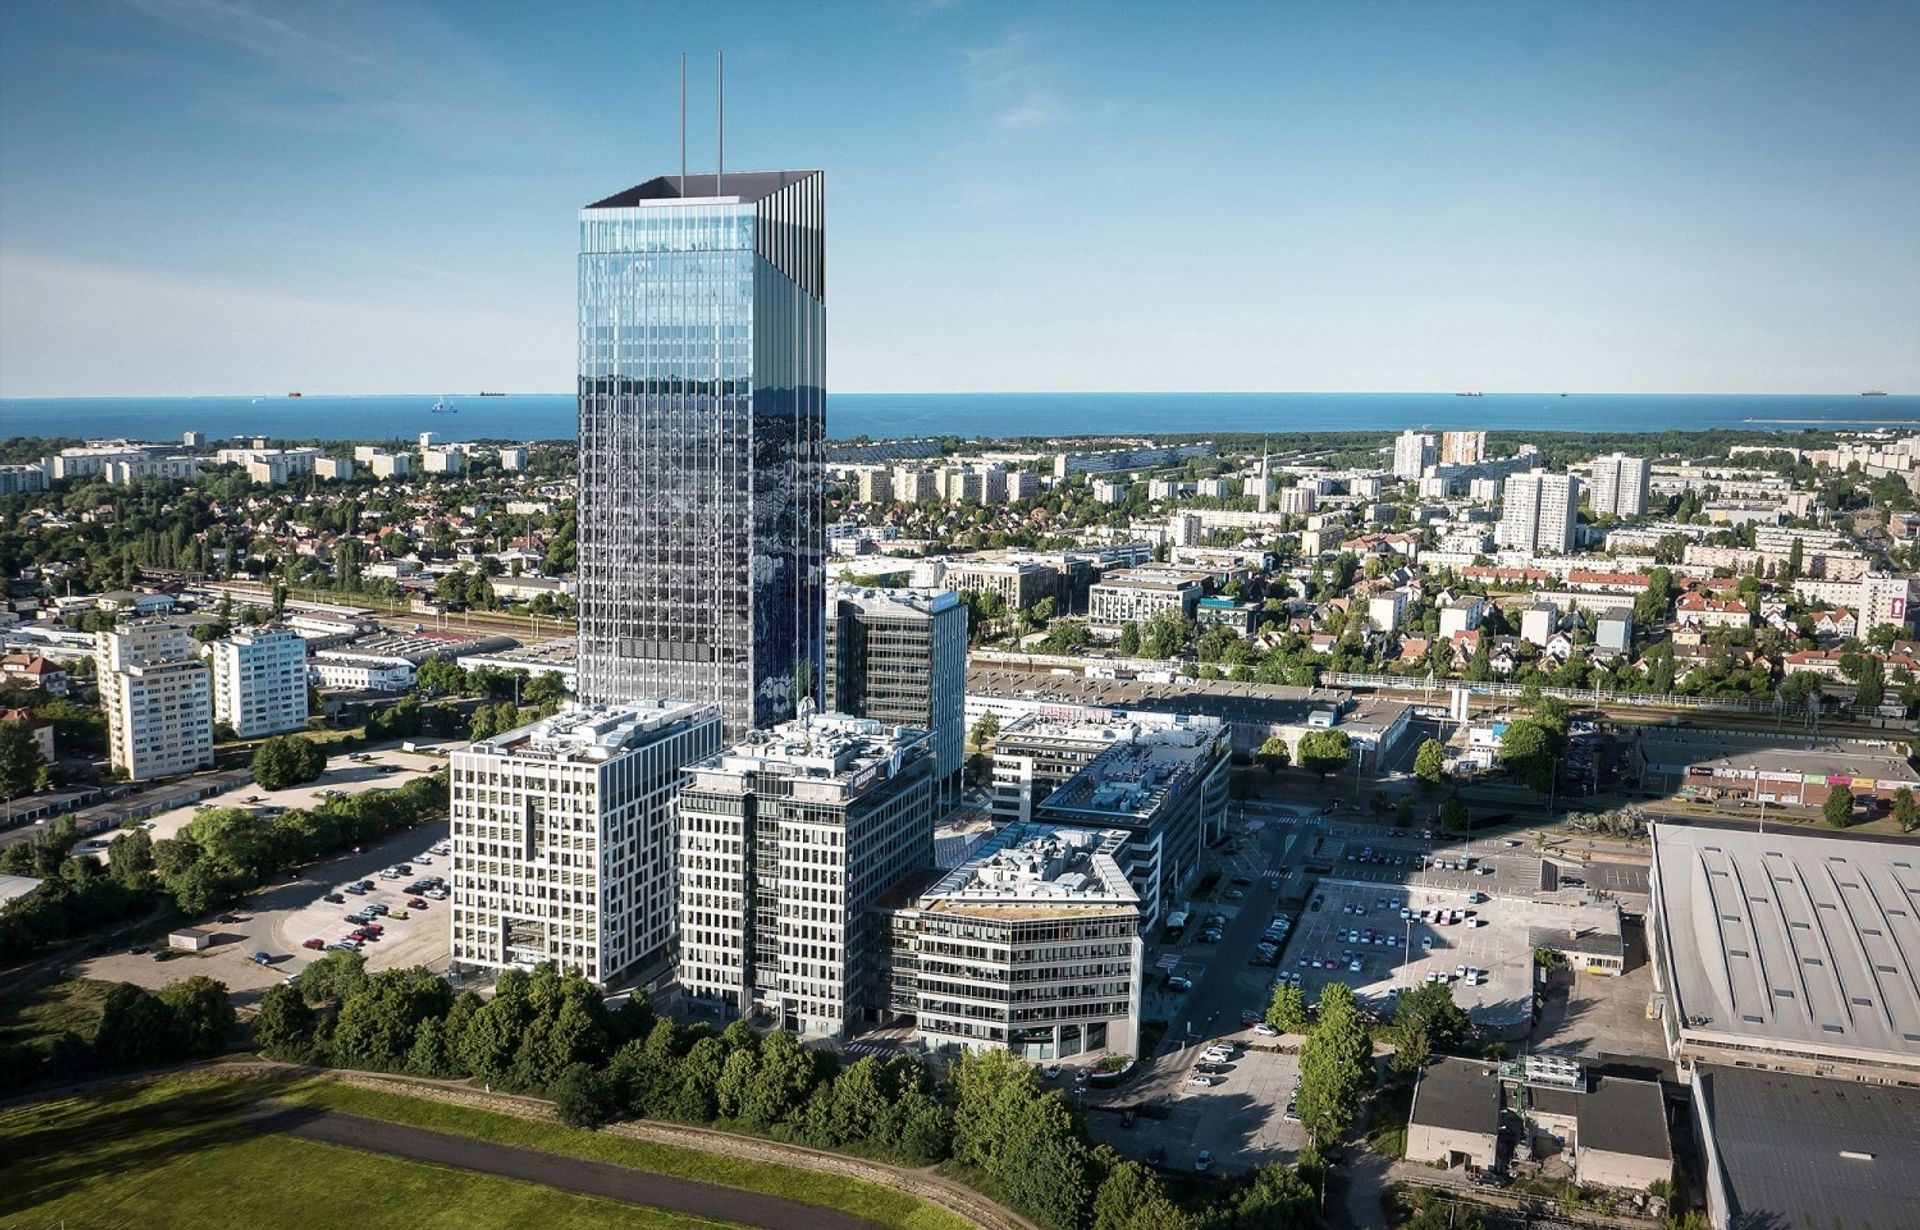 Firmy działające w Olivia Business Centre w Gdańsku poszukują 2000 nowych pracowników